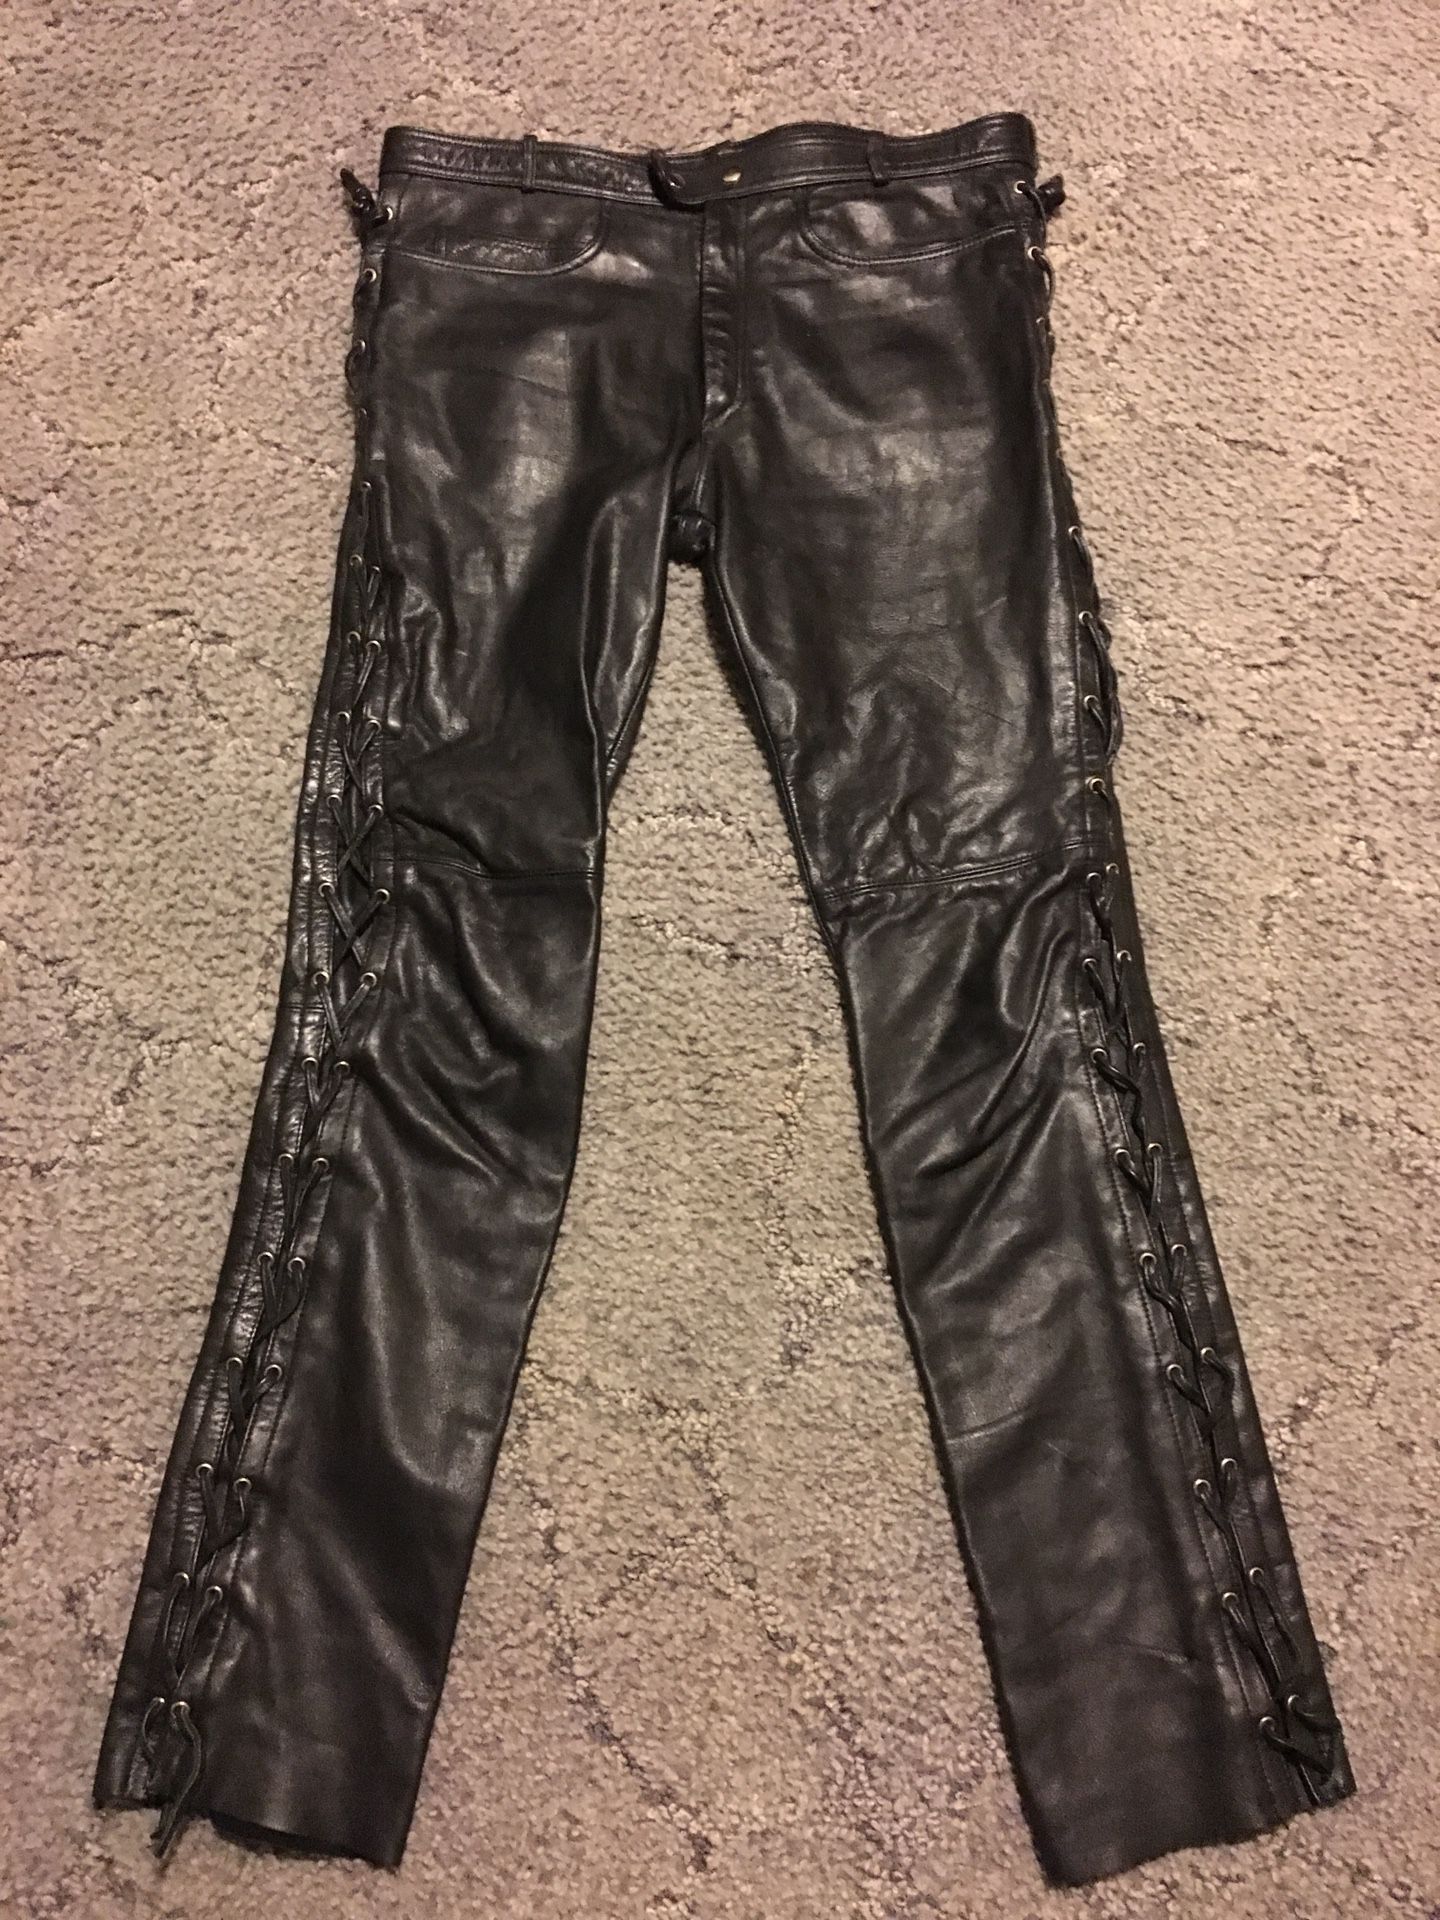 Verducci Men’s Lace Up Leather Motorcycle Pants W38 L32